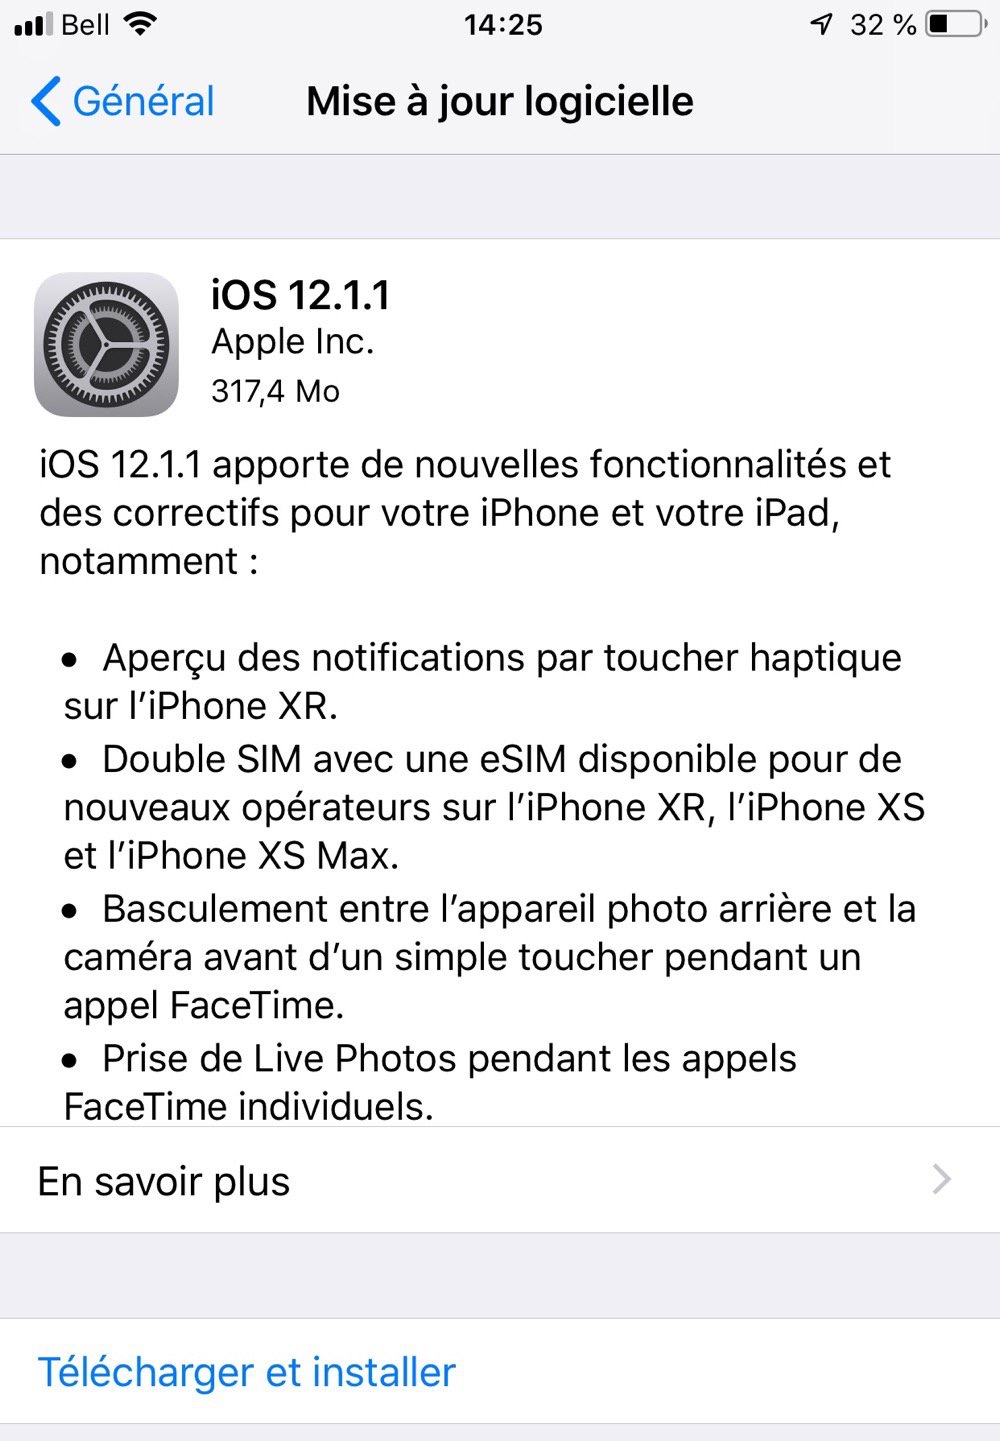 Сегодня Apple выпускает финальную версию iOS 12